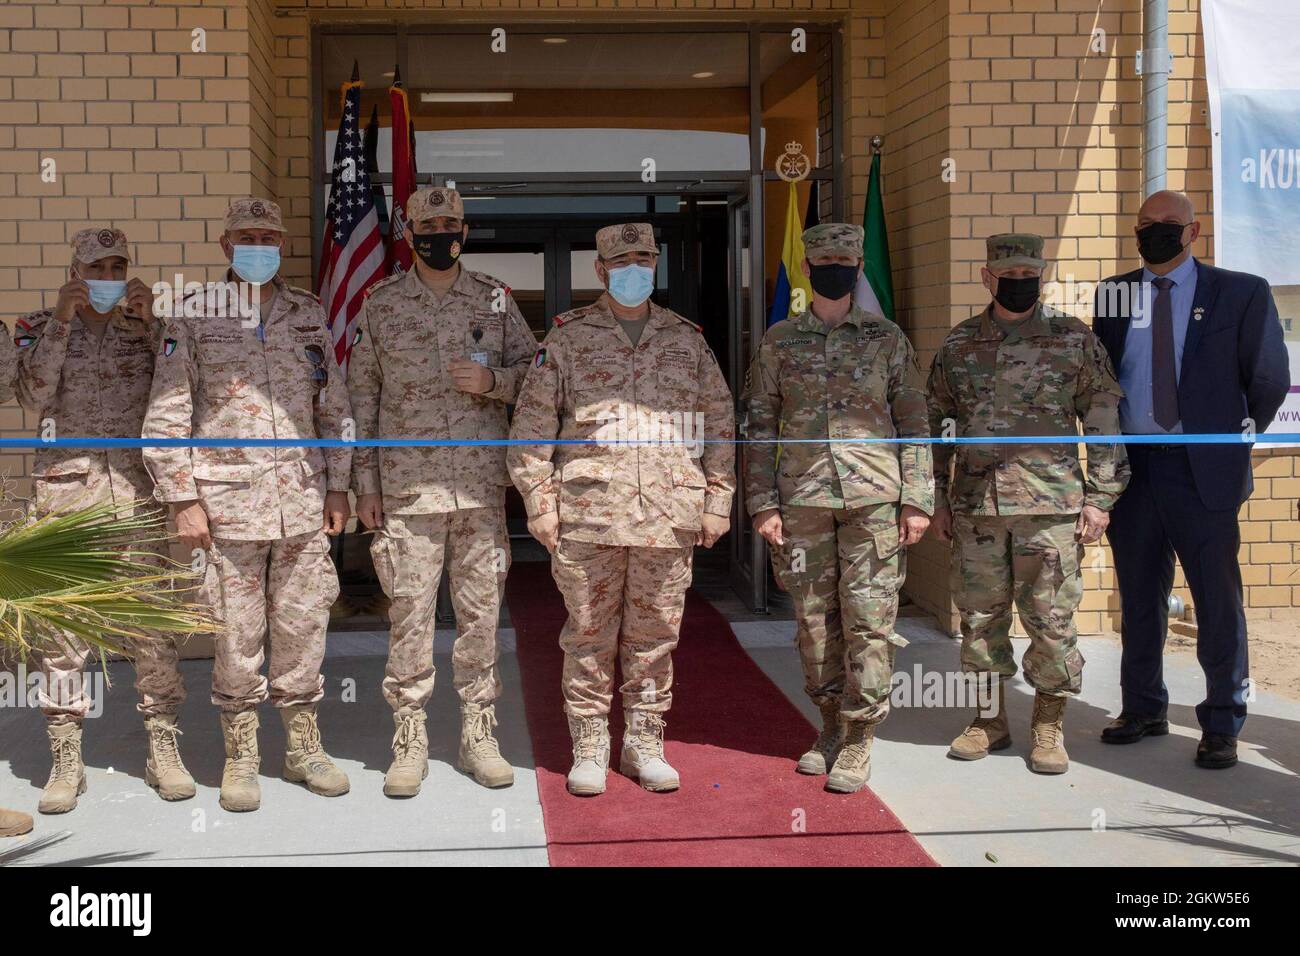 Kuwait e i membri del servizio americano e i civili si riuniscono prima di tagliare il nastro presso il nuovo Patriot Fire Site #7, Kuwait, 5 luglio 2021. Entrambe le organizzazioni americane e kuwaitiani si sono unite per pianificare, progettare, risorse e costruire il nuovo sito Patriot Fire Unit, sito #7. Foto Stock